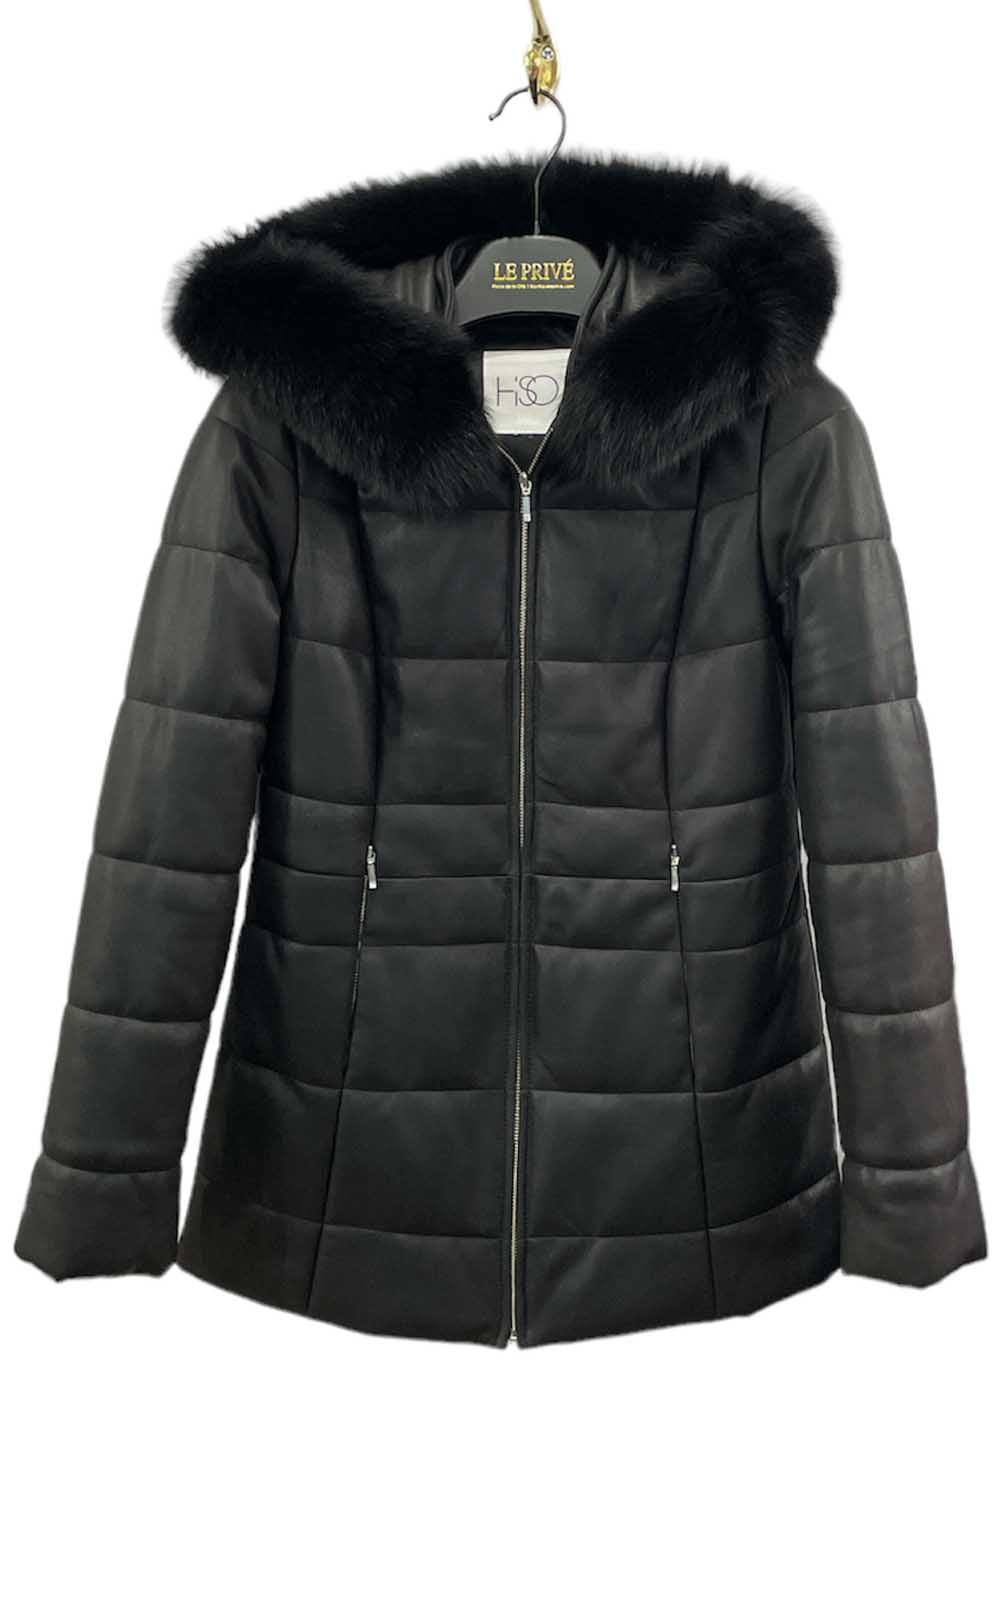 manteau en cuir noir doublé pour l'hiver